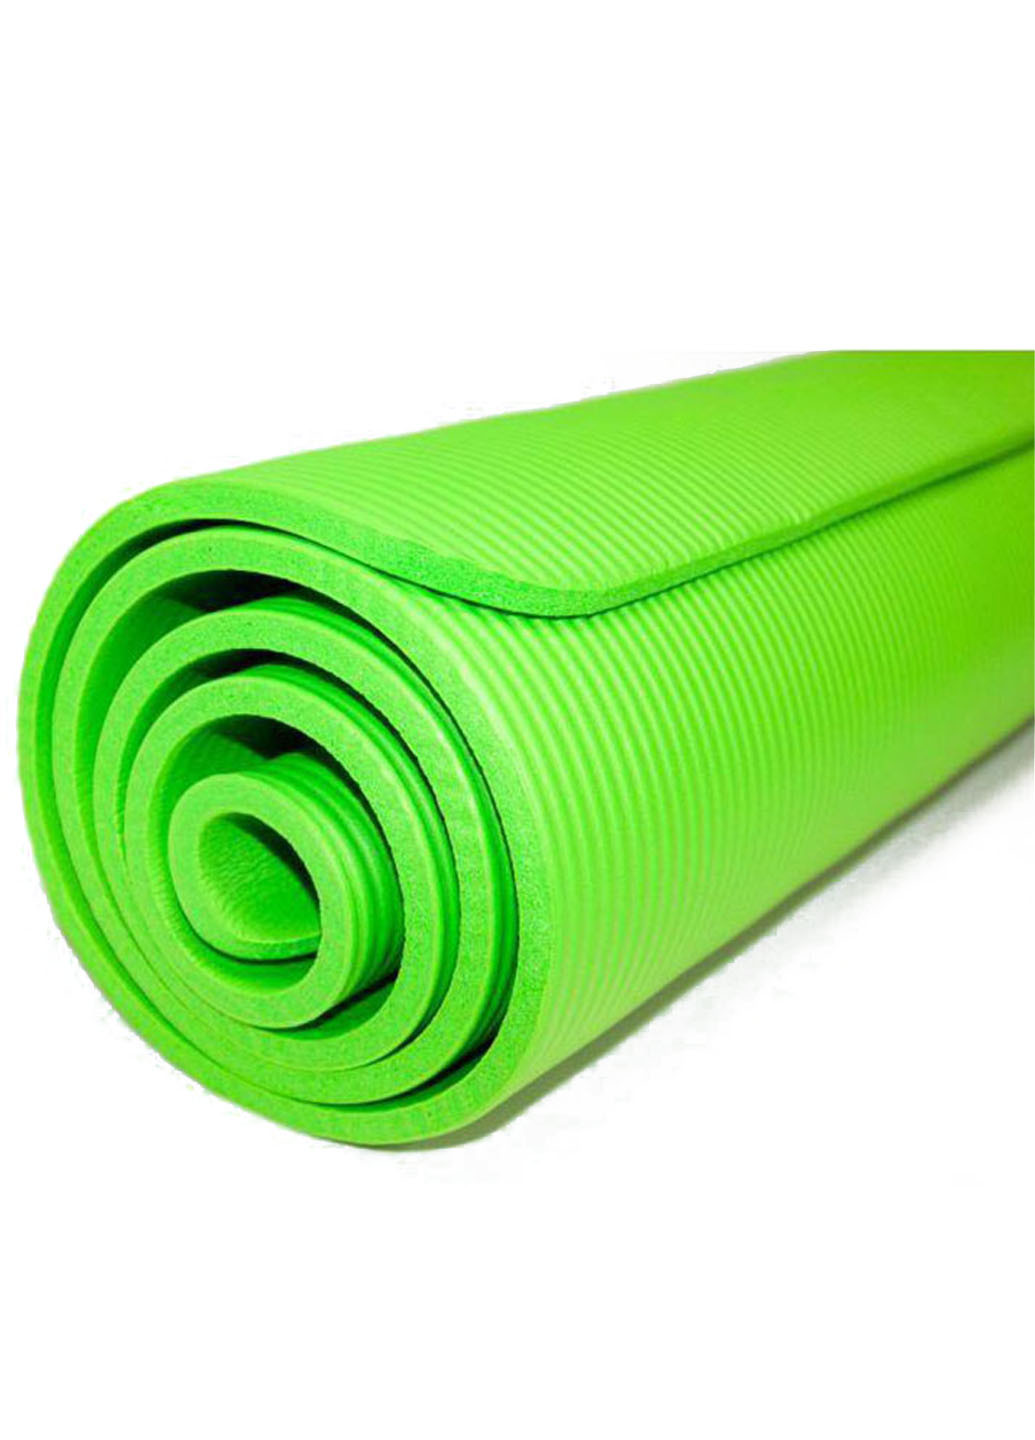 Коврик для йоги NBR HIGH-Density 10 мм салатовый (йогамат из вспененного каучука для фитнеса и пилатеса) EF-NK10GR EasyFit (237596297)